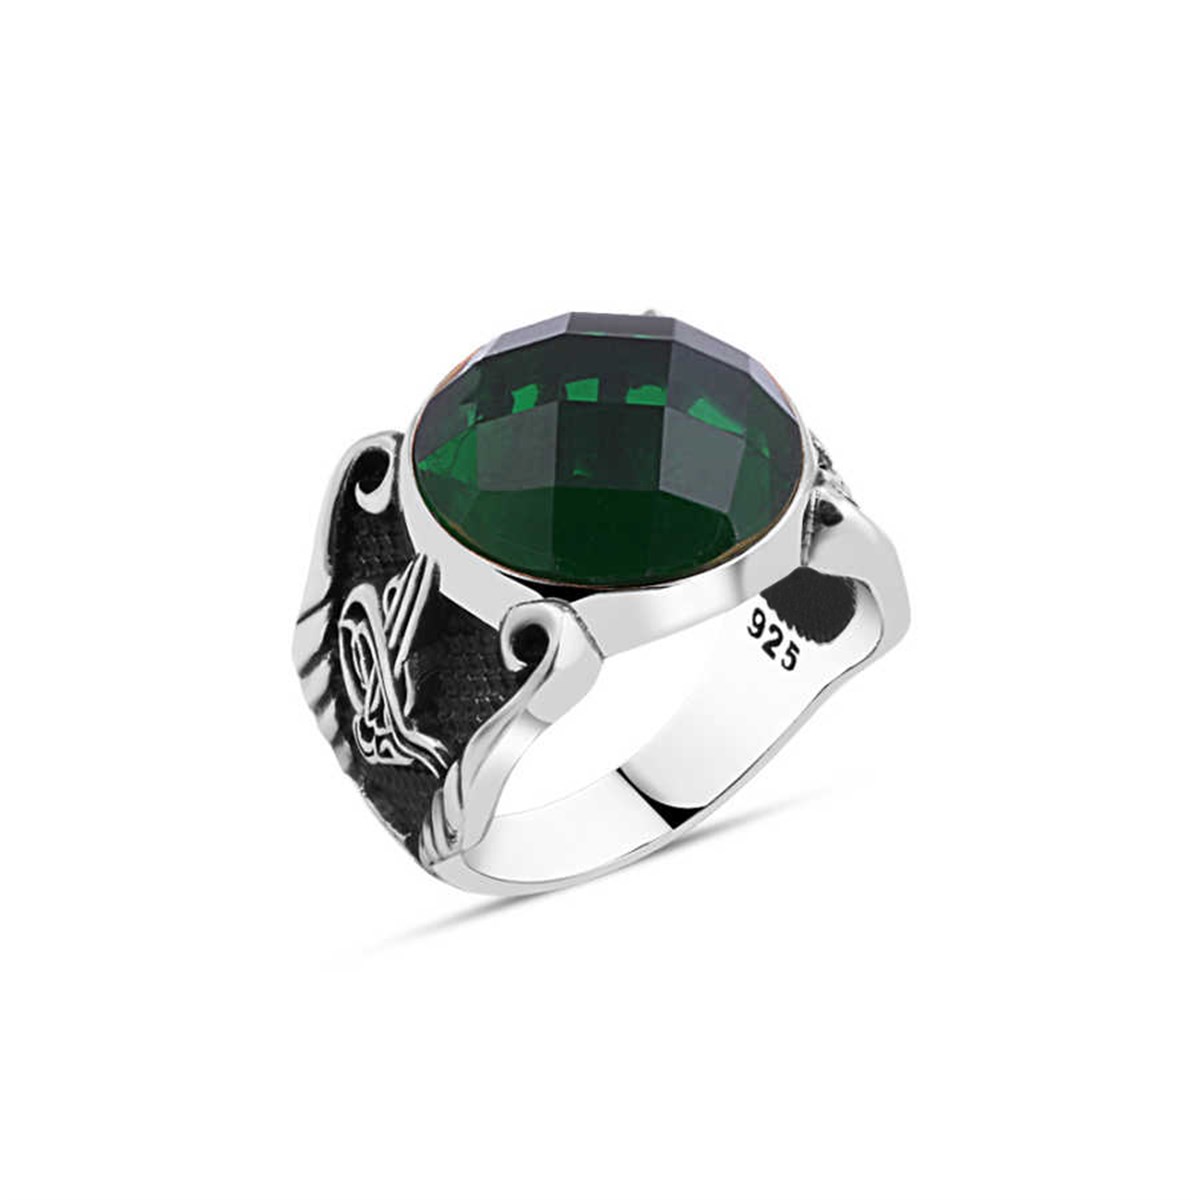 Cut Green Zircon Stone Sterling Silver Men's Ring